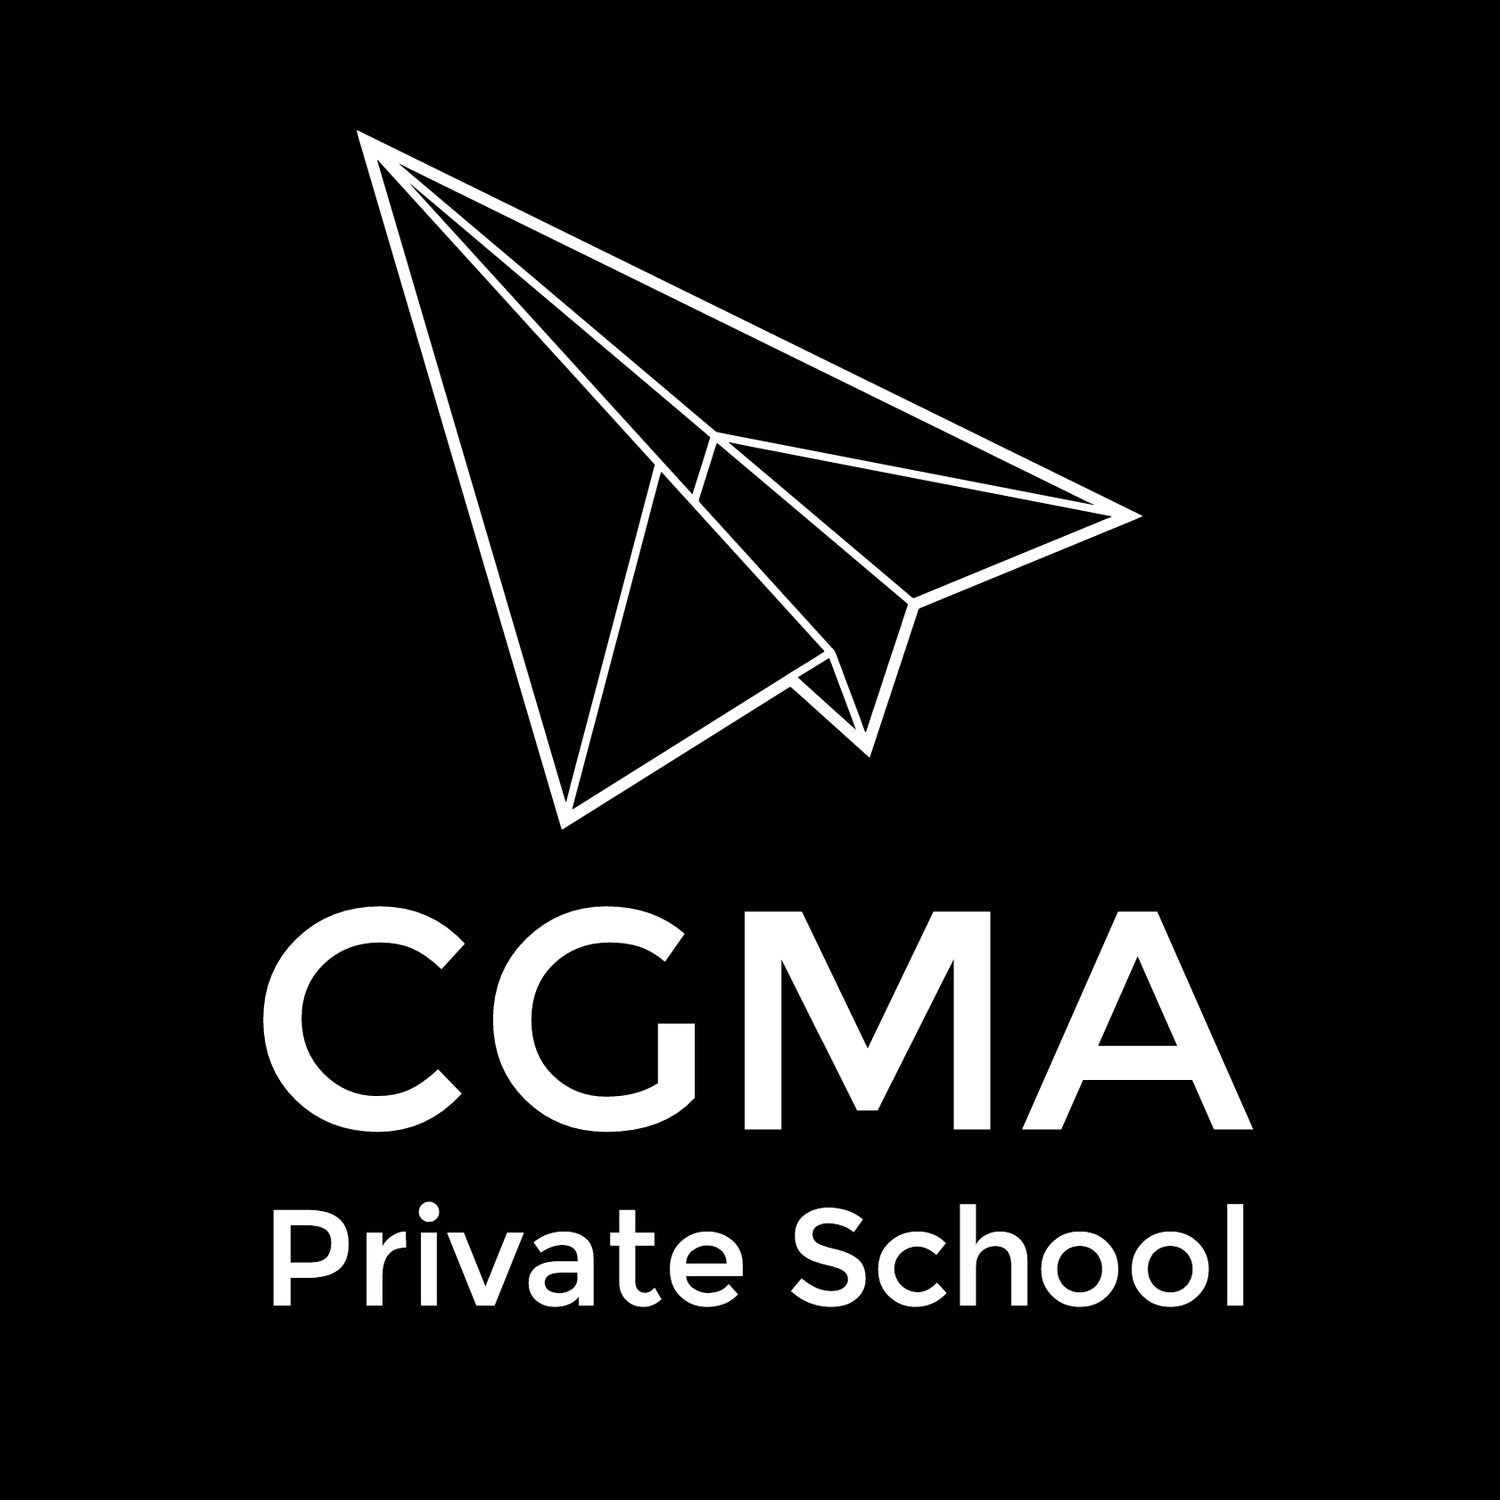 Cgma Private School